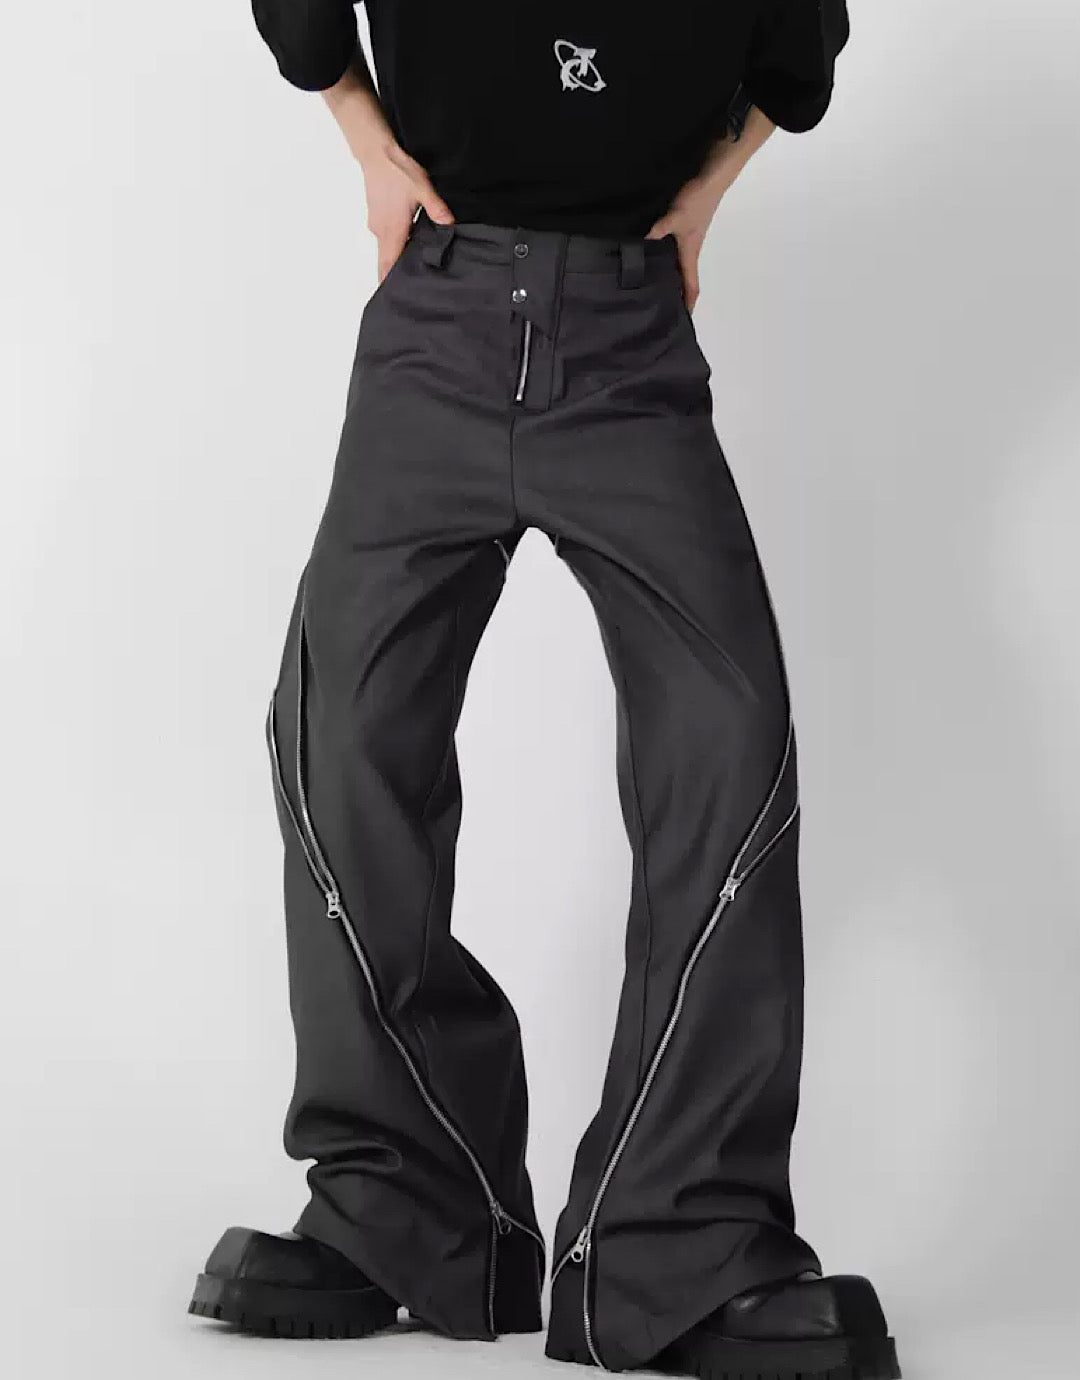 CulturE Zipper Pants